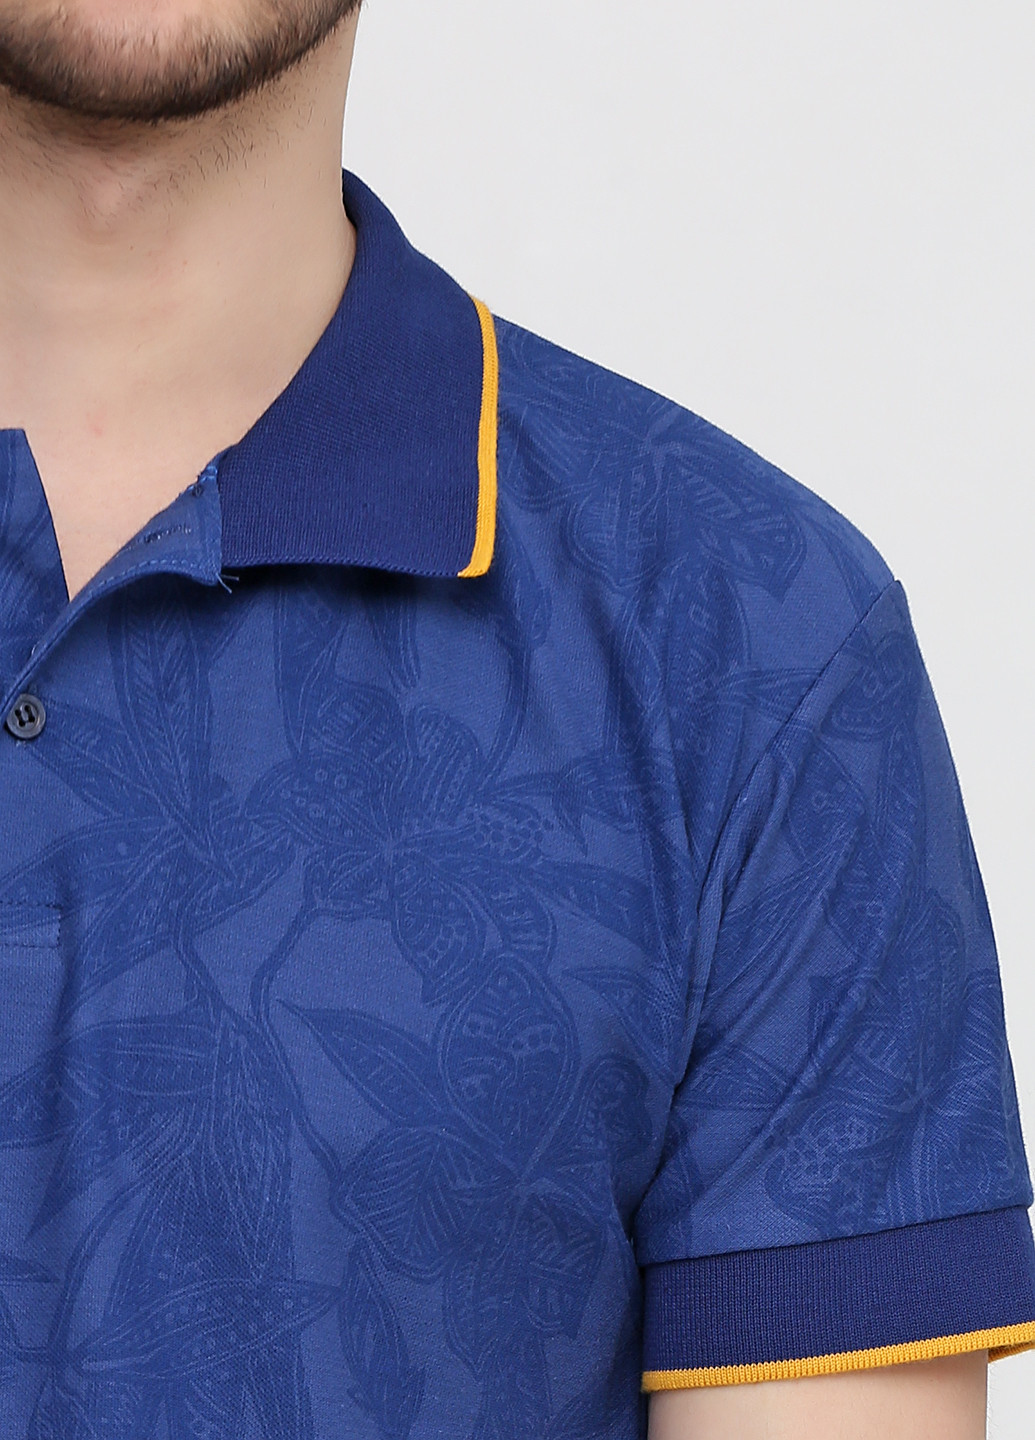 Синяя футболка-поло для мужчин Chiarotex с абстрактным узором